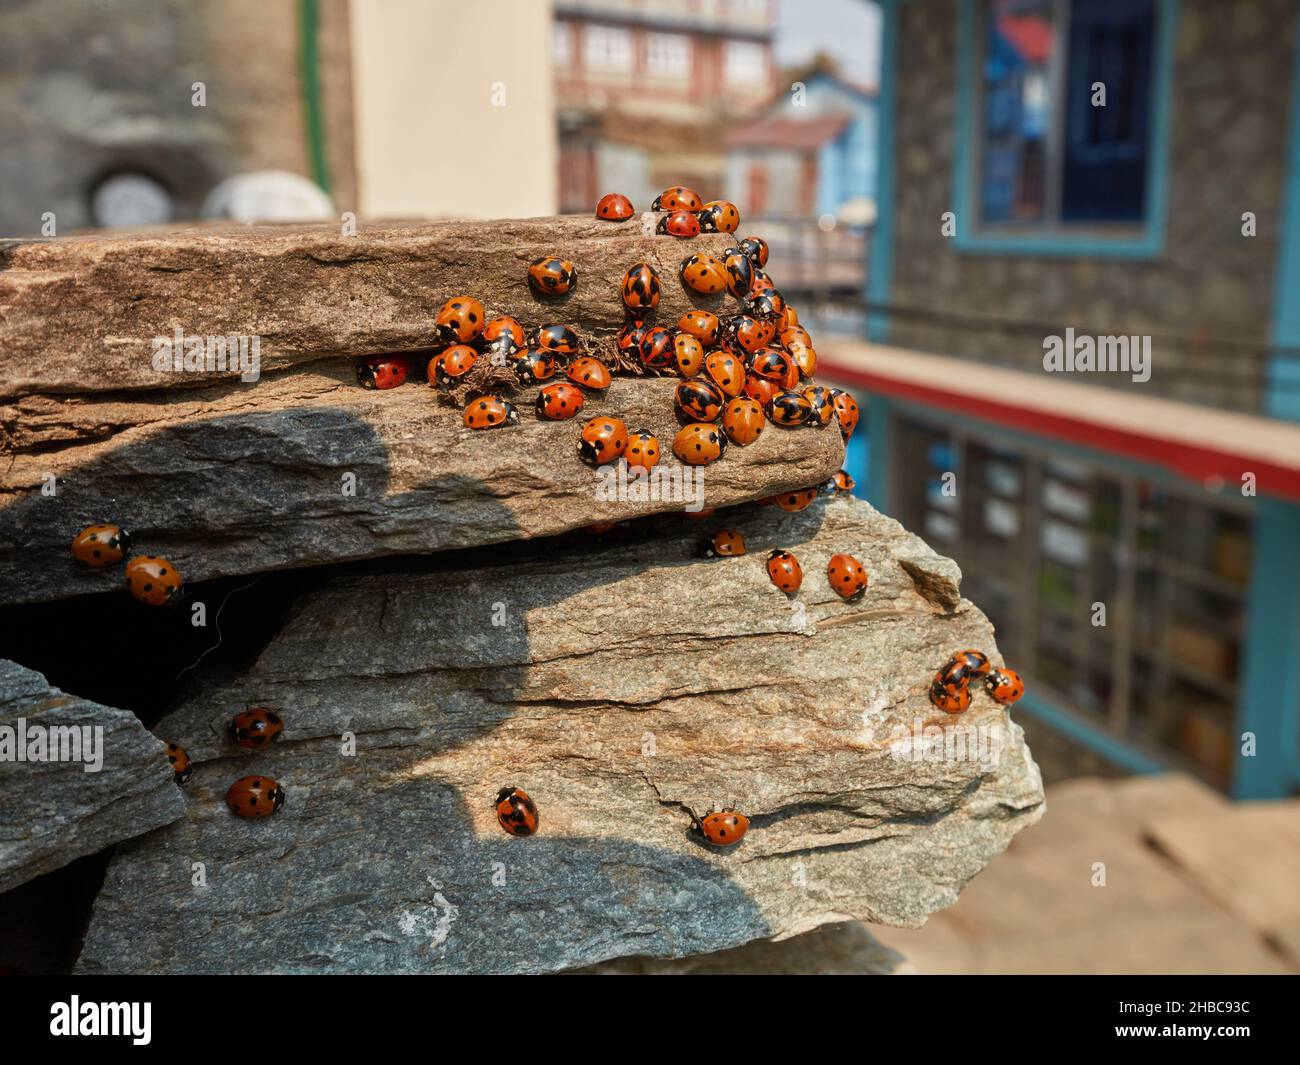 Bunte Asiatische Lady Beetle. Eine große Gruppe Marienkäfer sammelte sich auf den Felsen in der Nähe von Gebäuden Stockfoto